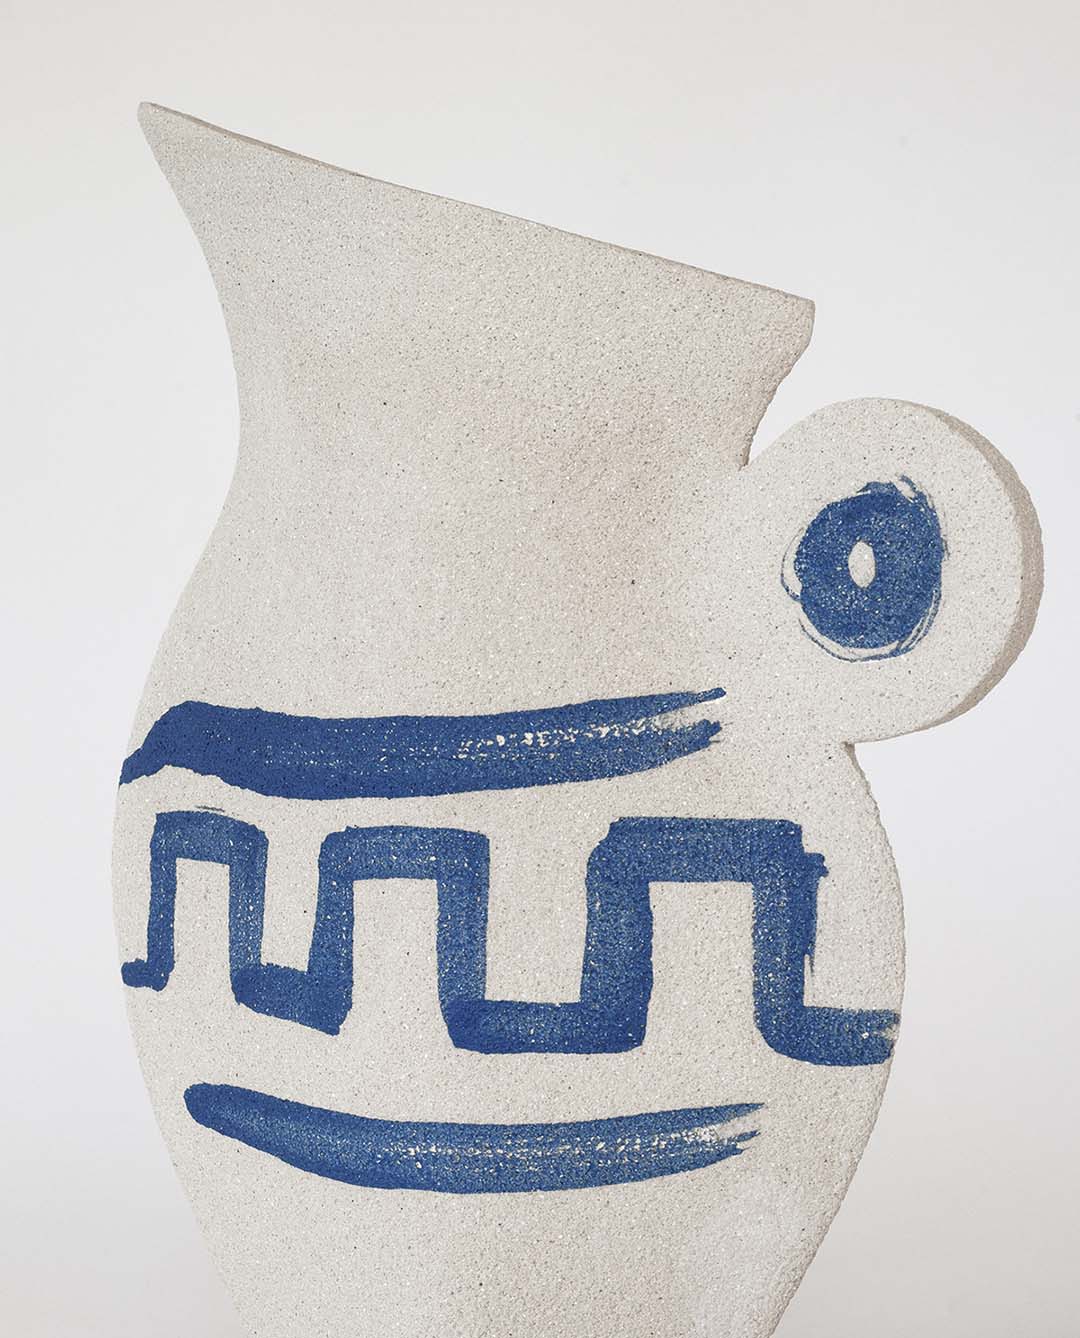 Brocca in ceramica illustrata ‘Greek Pitcher’